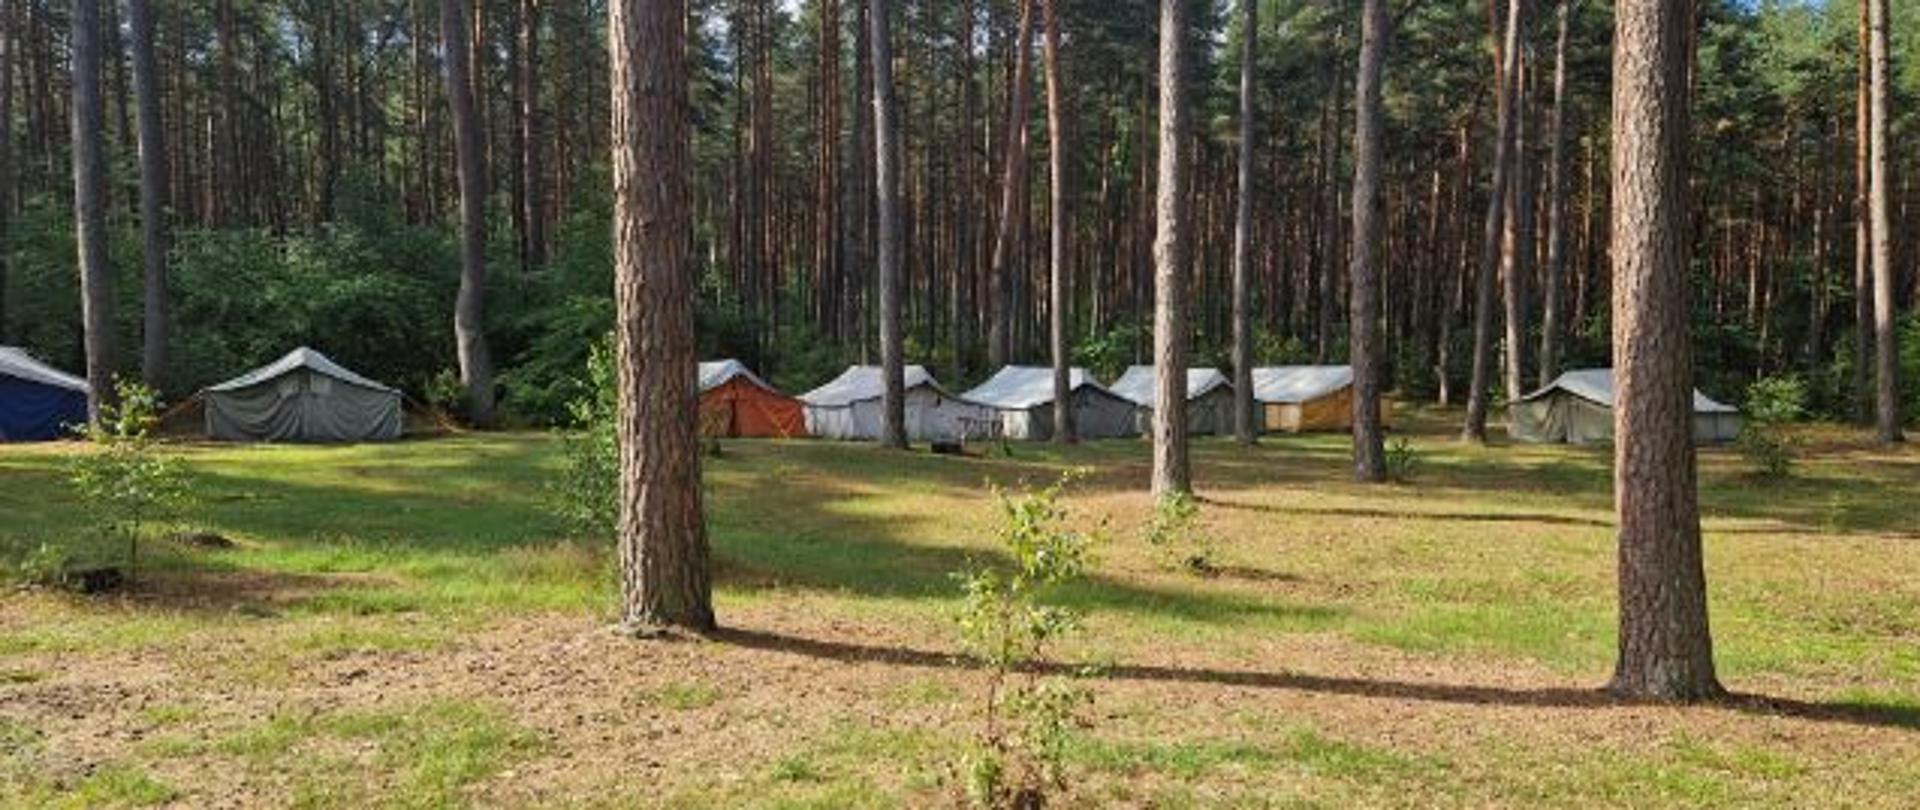 Na zdjęciu widać obozowisko harcerskie składające się z namiotów ustawionych między drzewami.